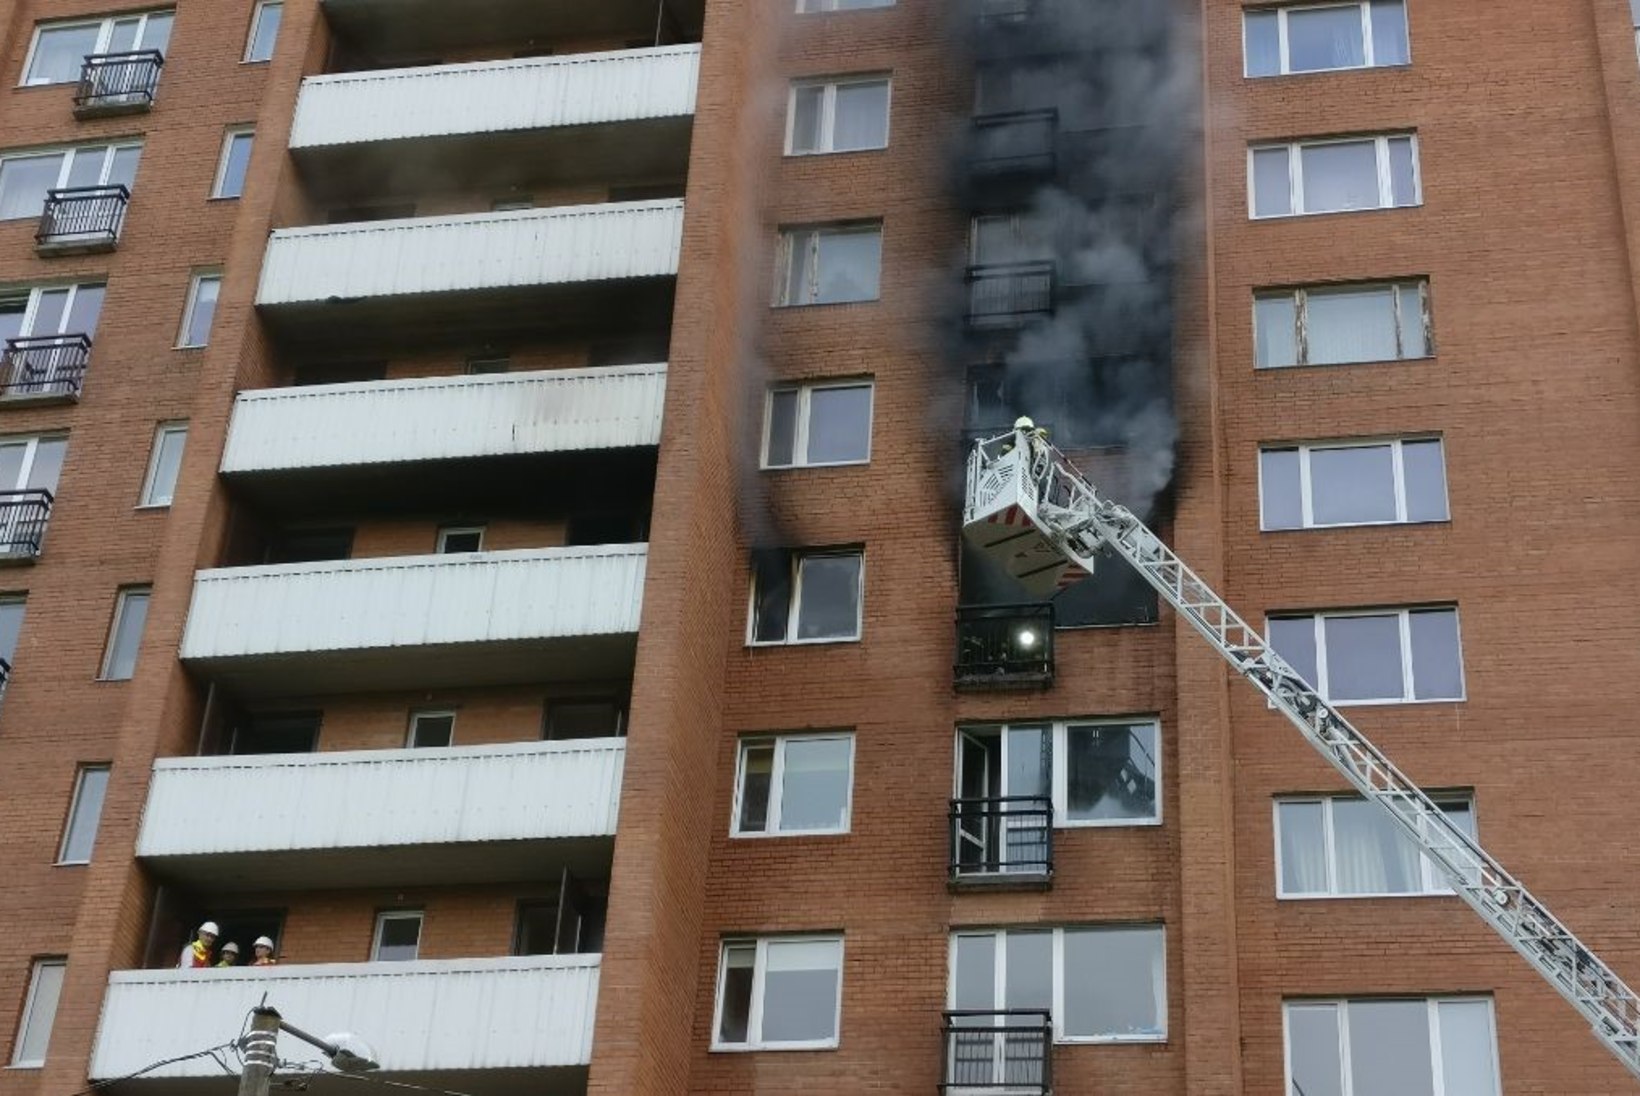 FOTOD ja VIDEOD SÜNDMUSKOHALT | Mustamäel põles korrusmaja korter